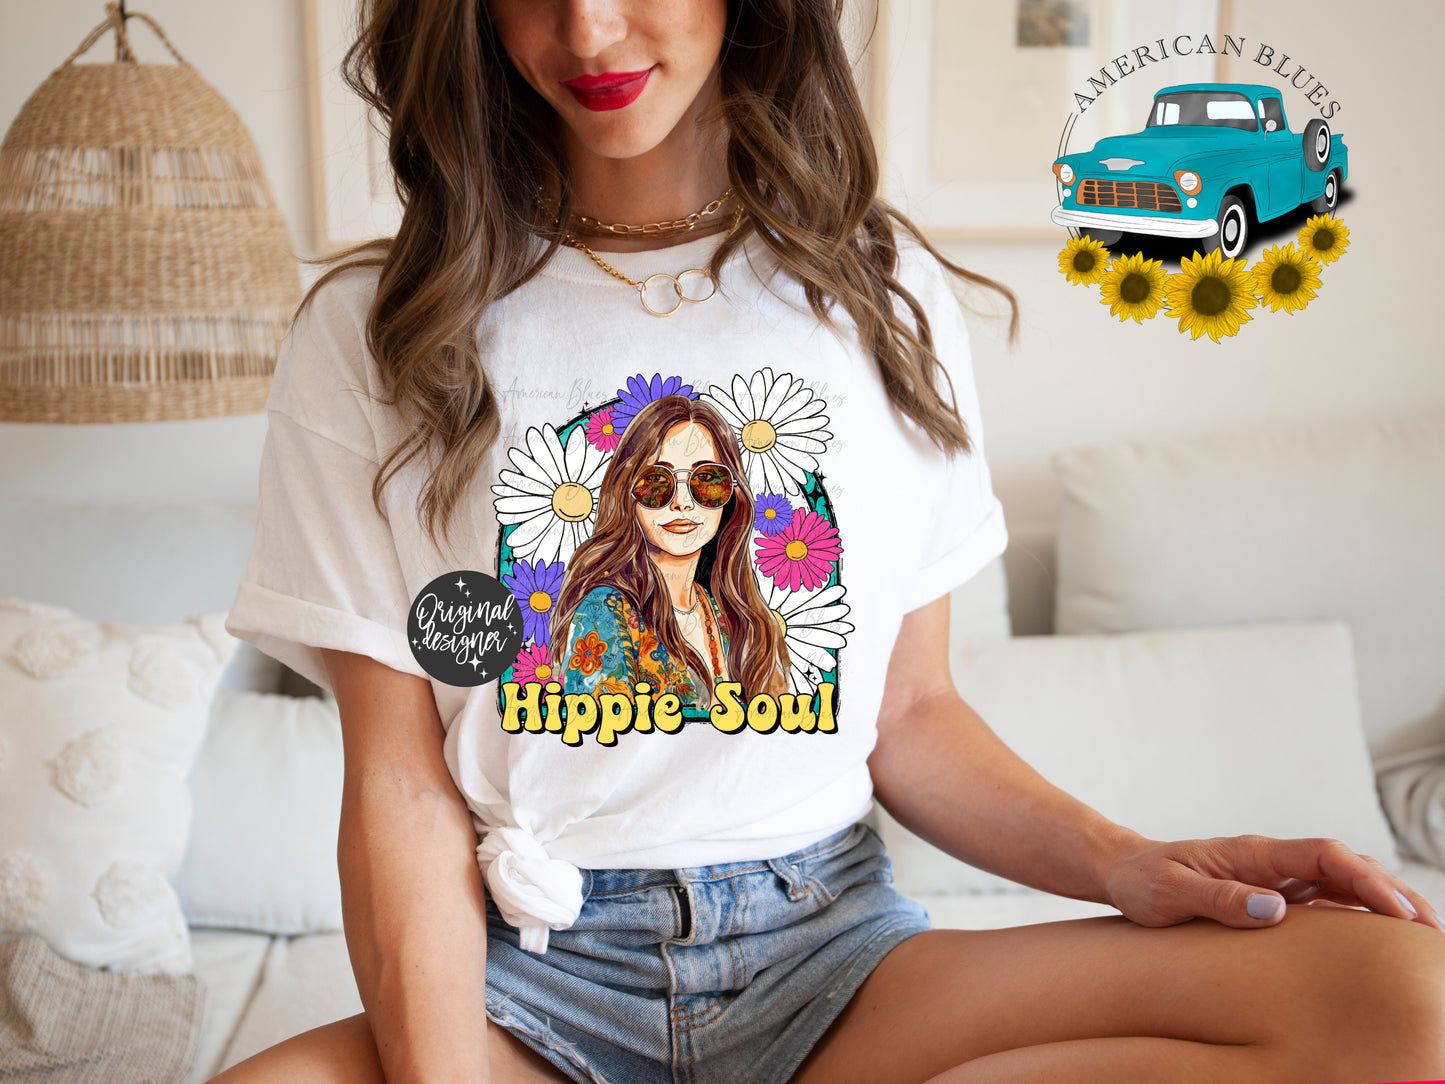 Hippie Soul- brown hair